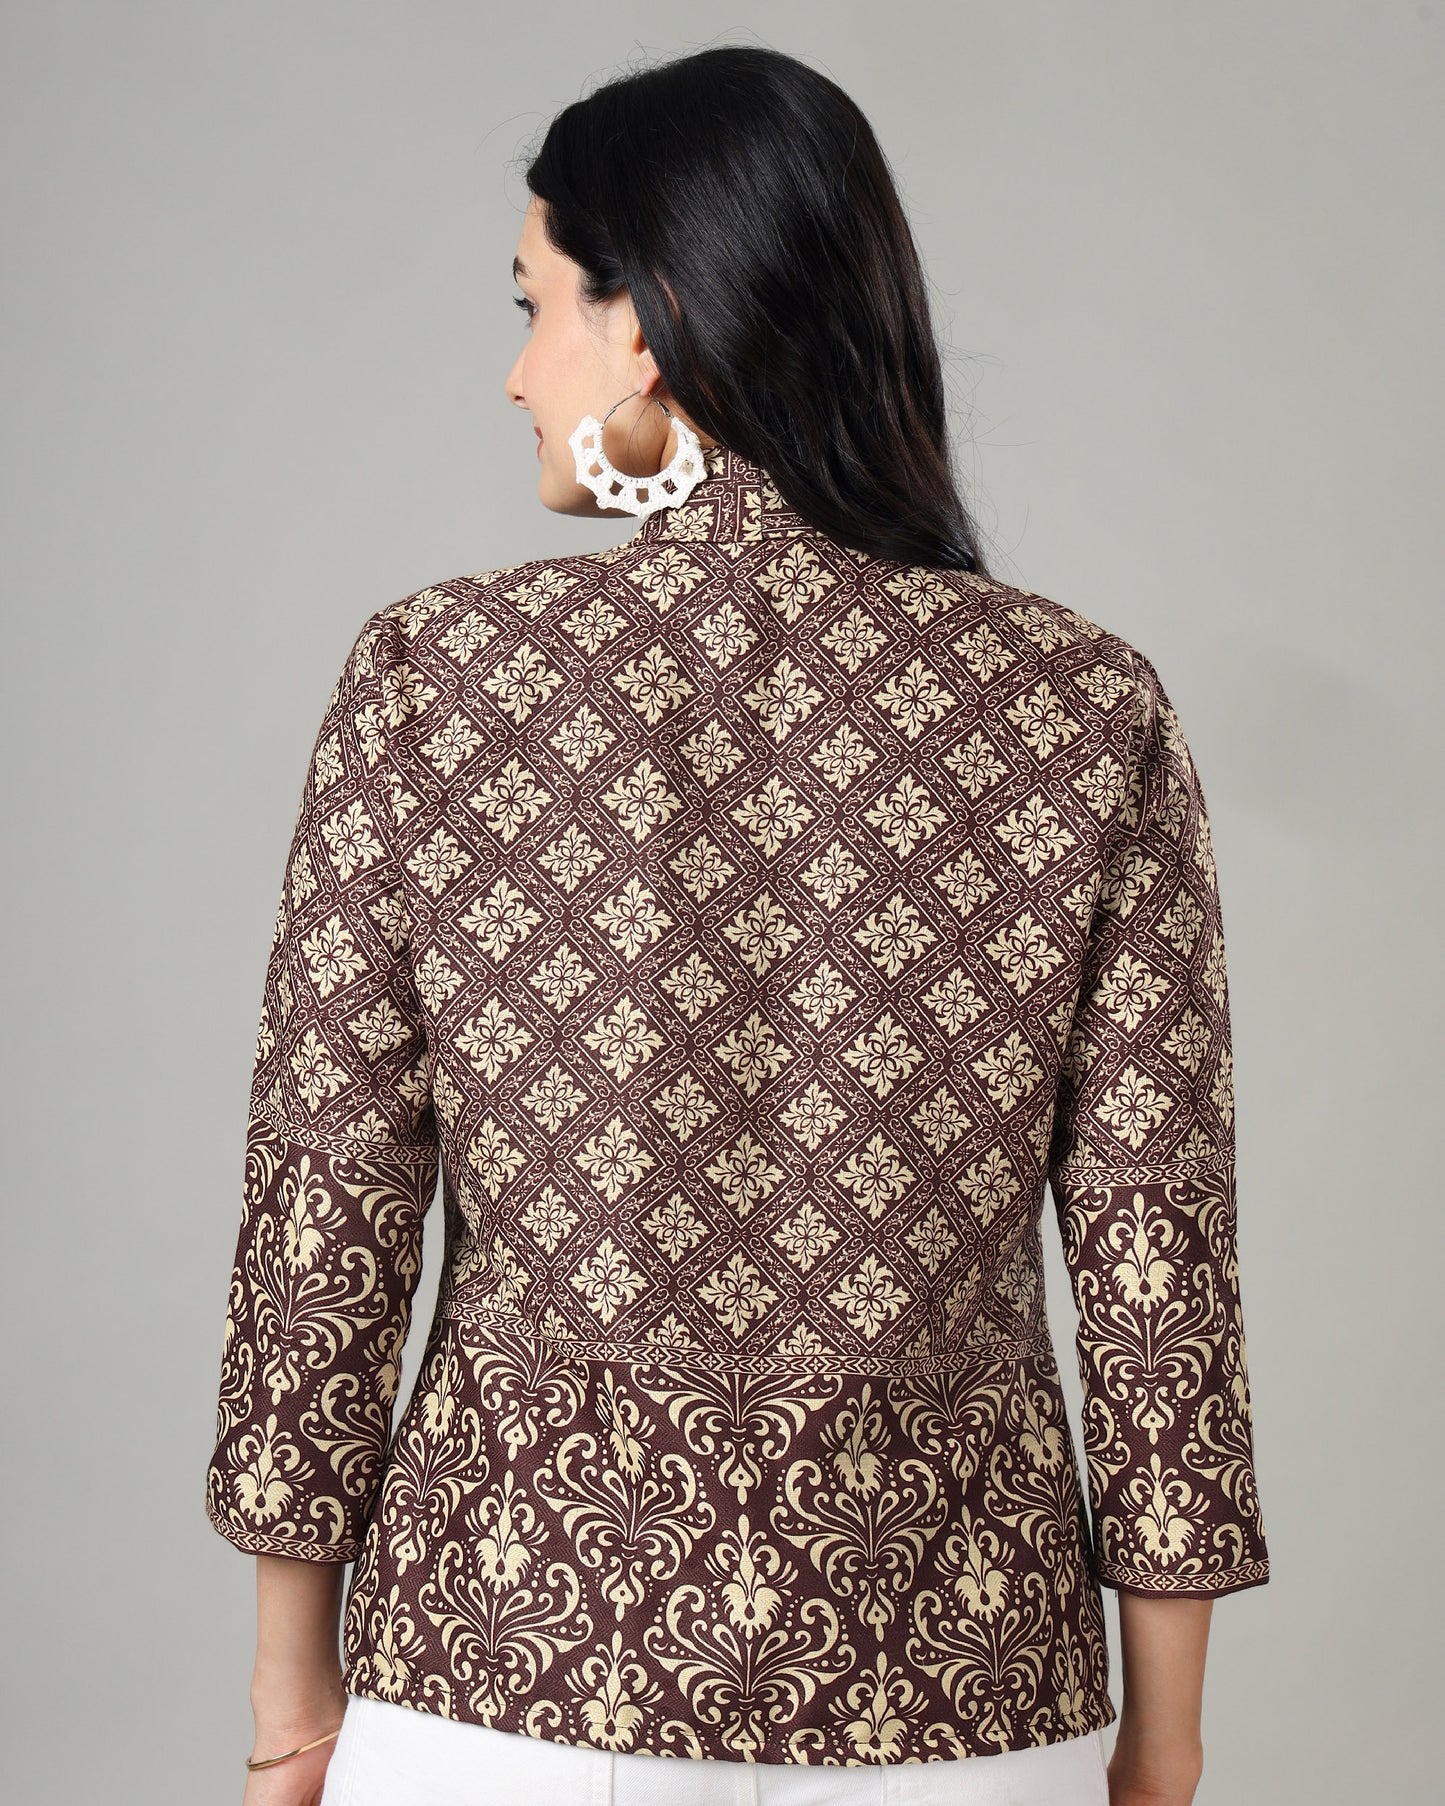 Stylish And Cozy Pashmina Jacket For Women